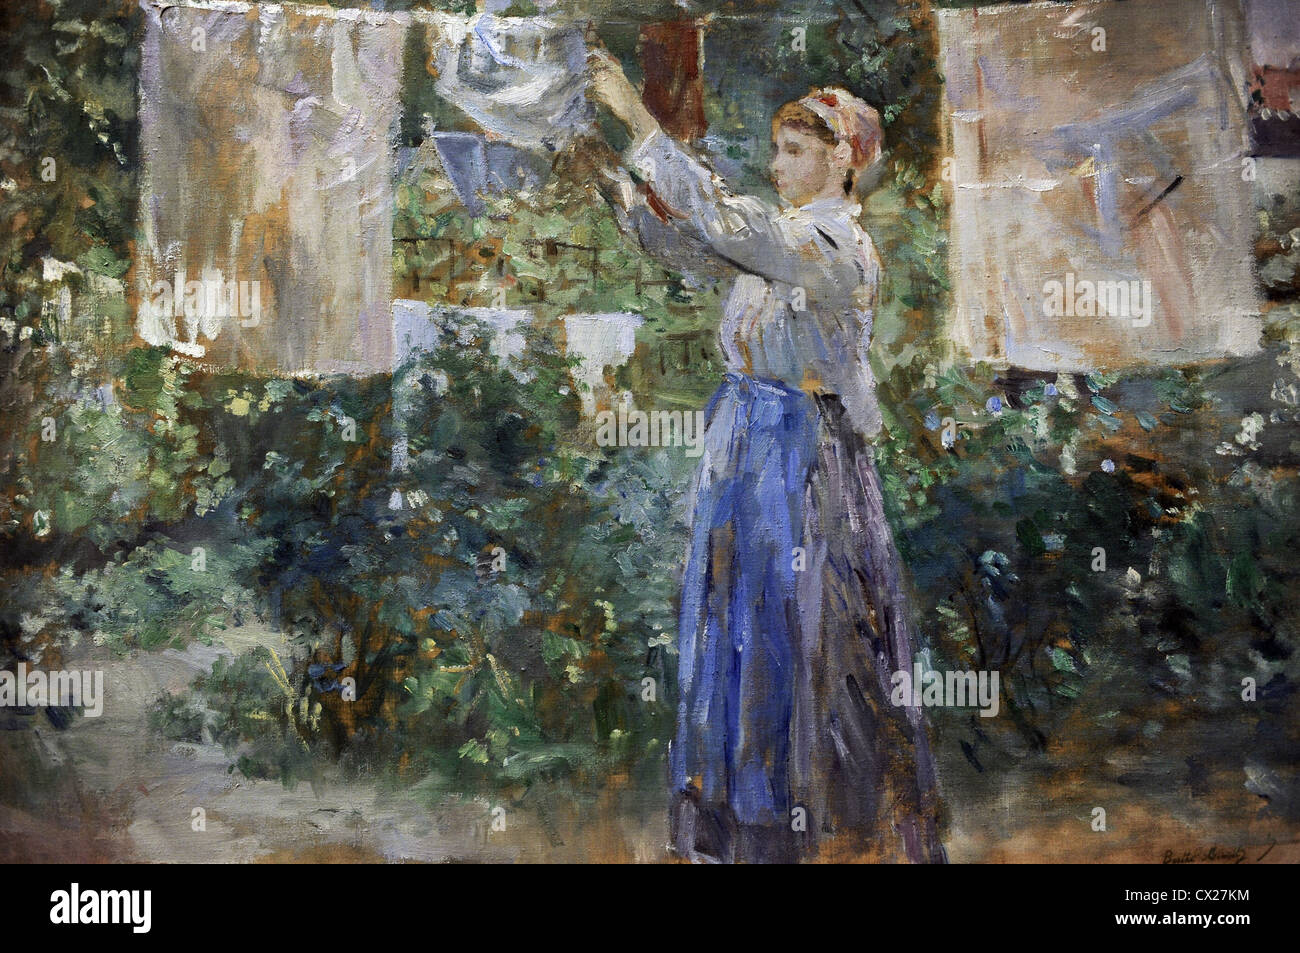 Berthe Morisot (1841-1895). El pintor francés. El impresionismo. Joven campesina colgar la ropa a secar (1881). Carlsberg Glyptotek. Foto de stock